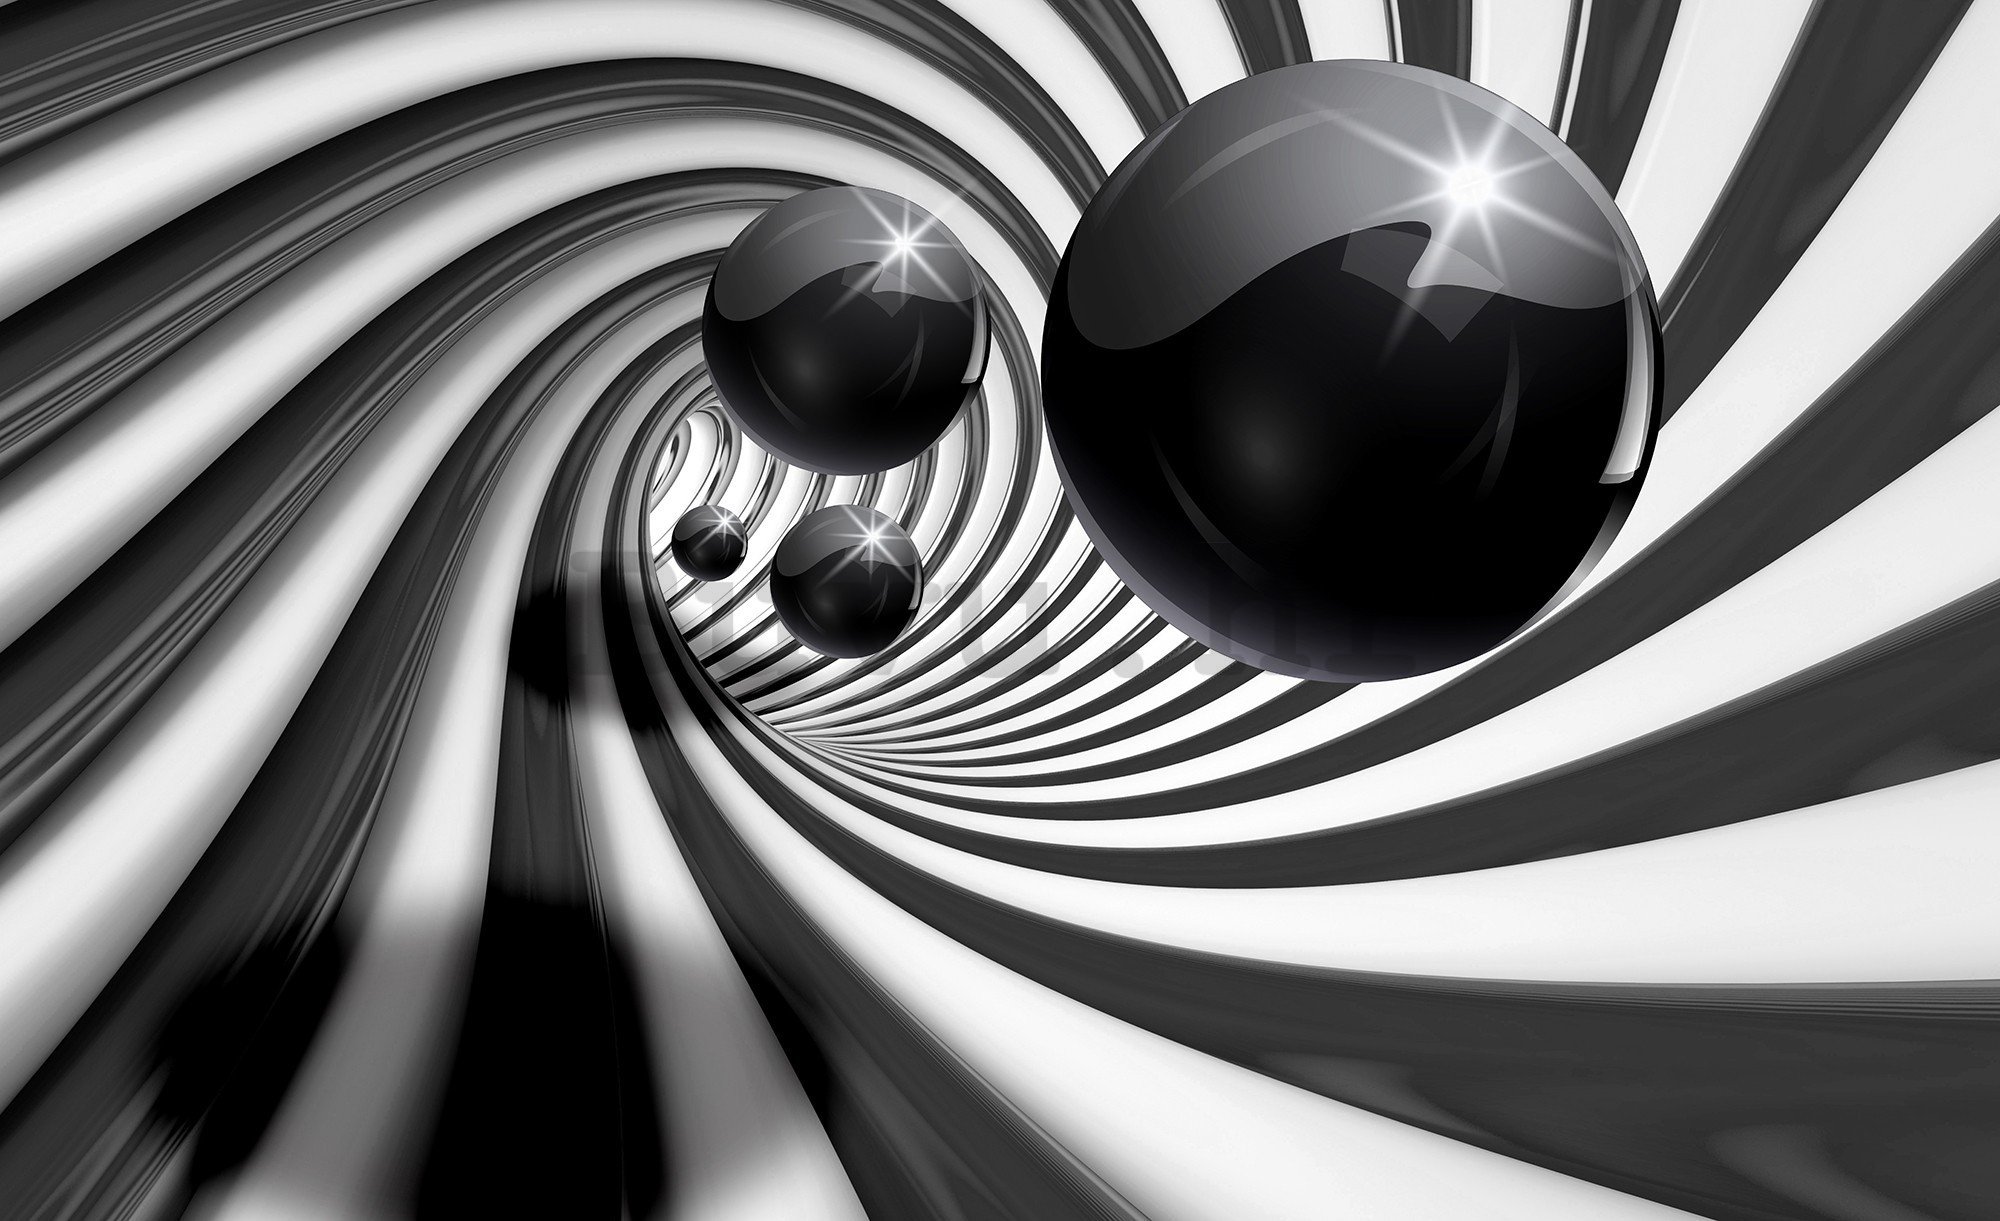 Vlies foto tapeta: Crne kuglice i spirala - 416x254 cm